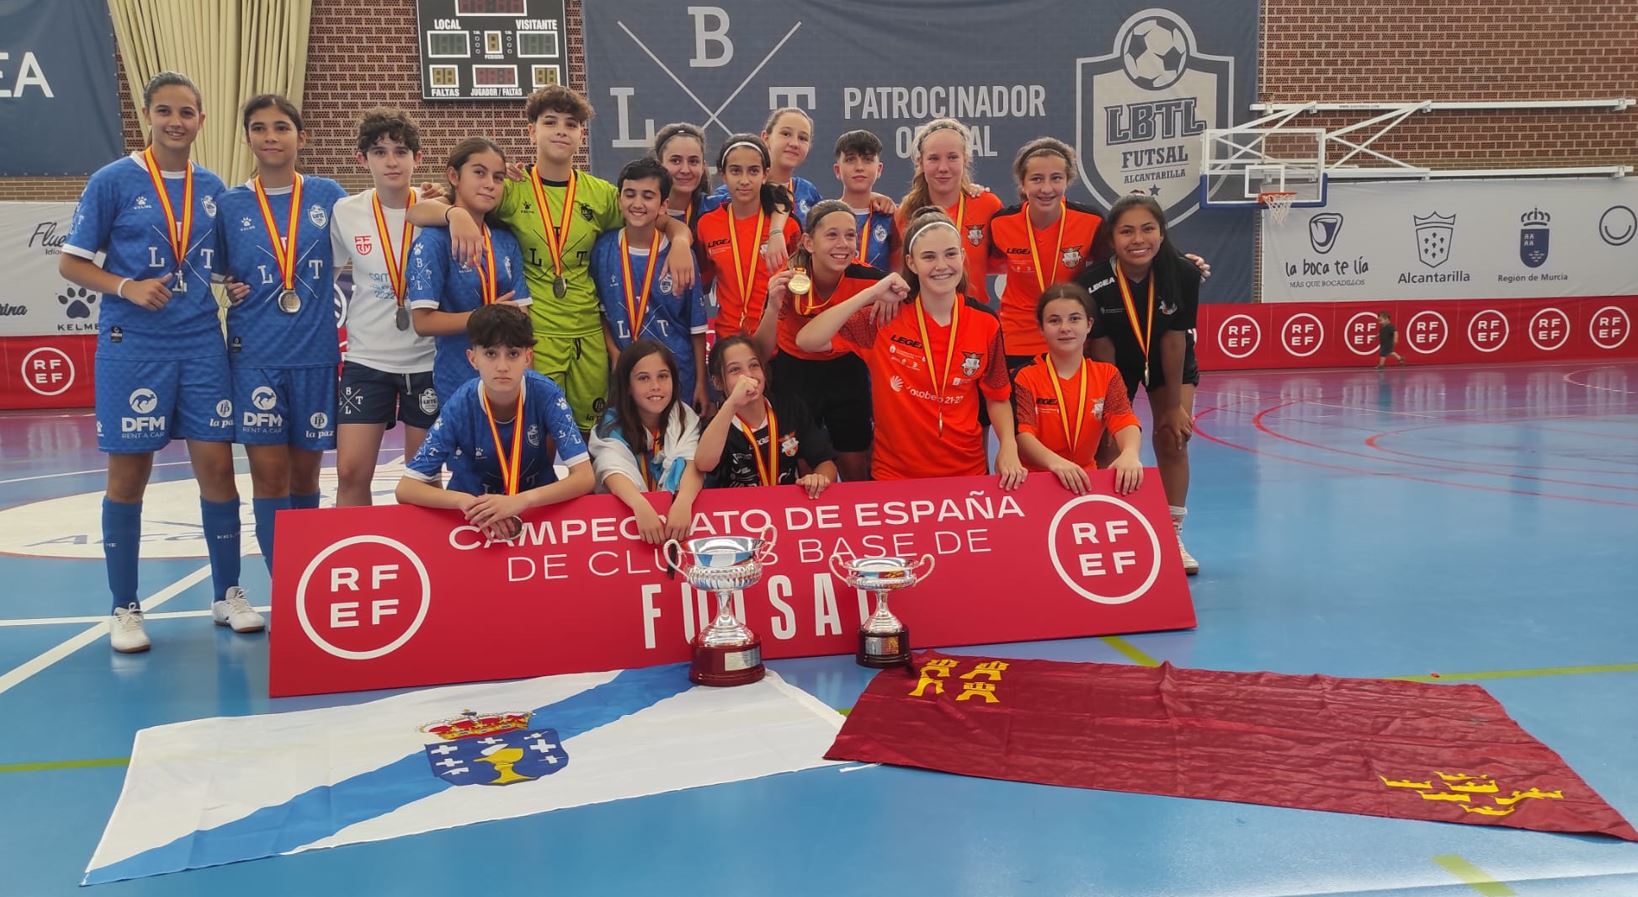 El Viaxes Amarelle FSF infantil femenino se proclama Campeón de España al vencer en la final al LBTL Futsal Alcantarilla